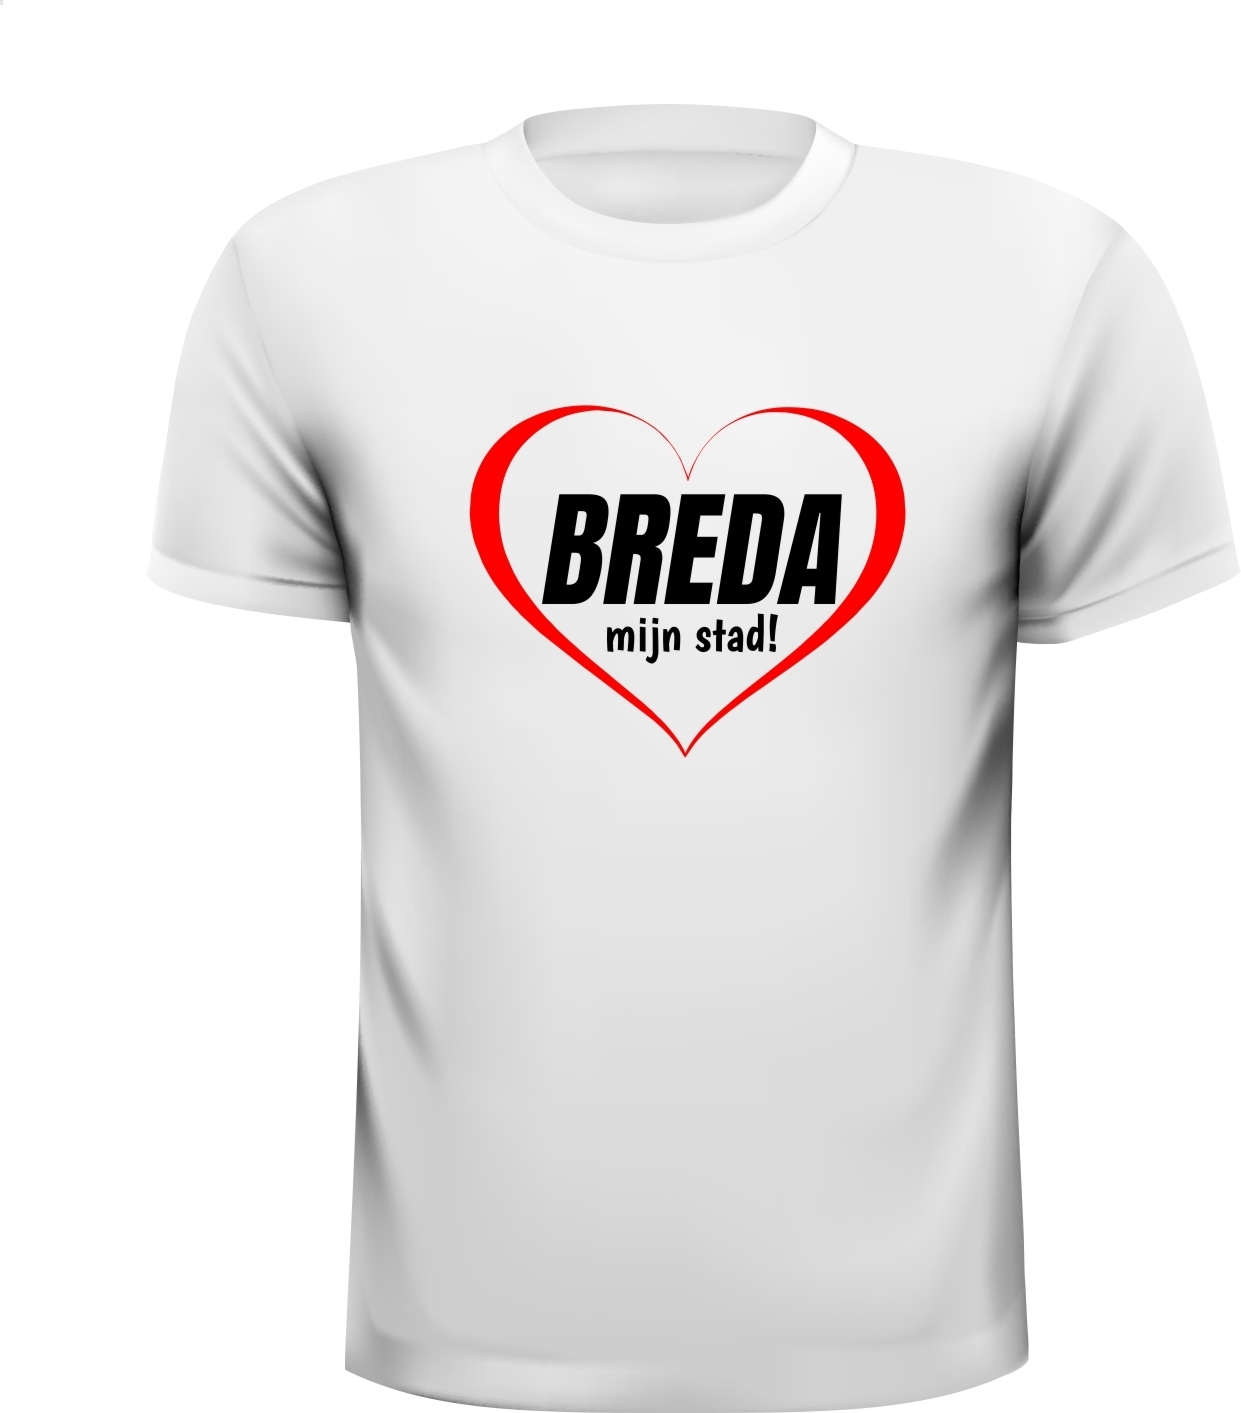 T-shirt Breda mijn stad houden van ik hou van